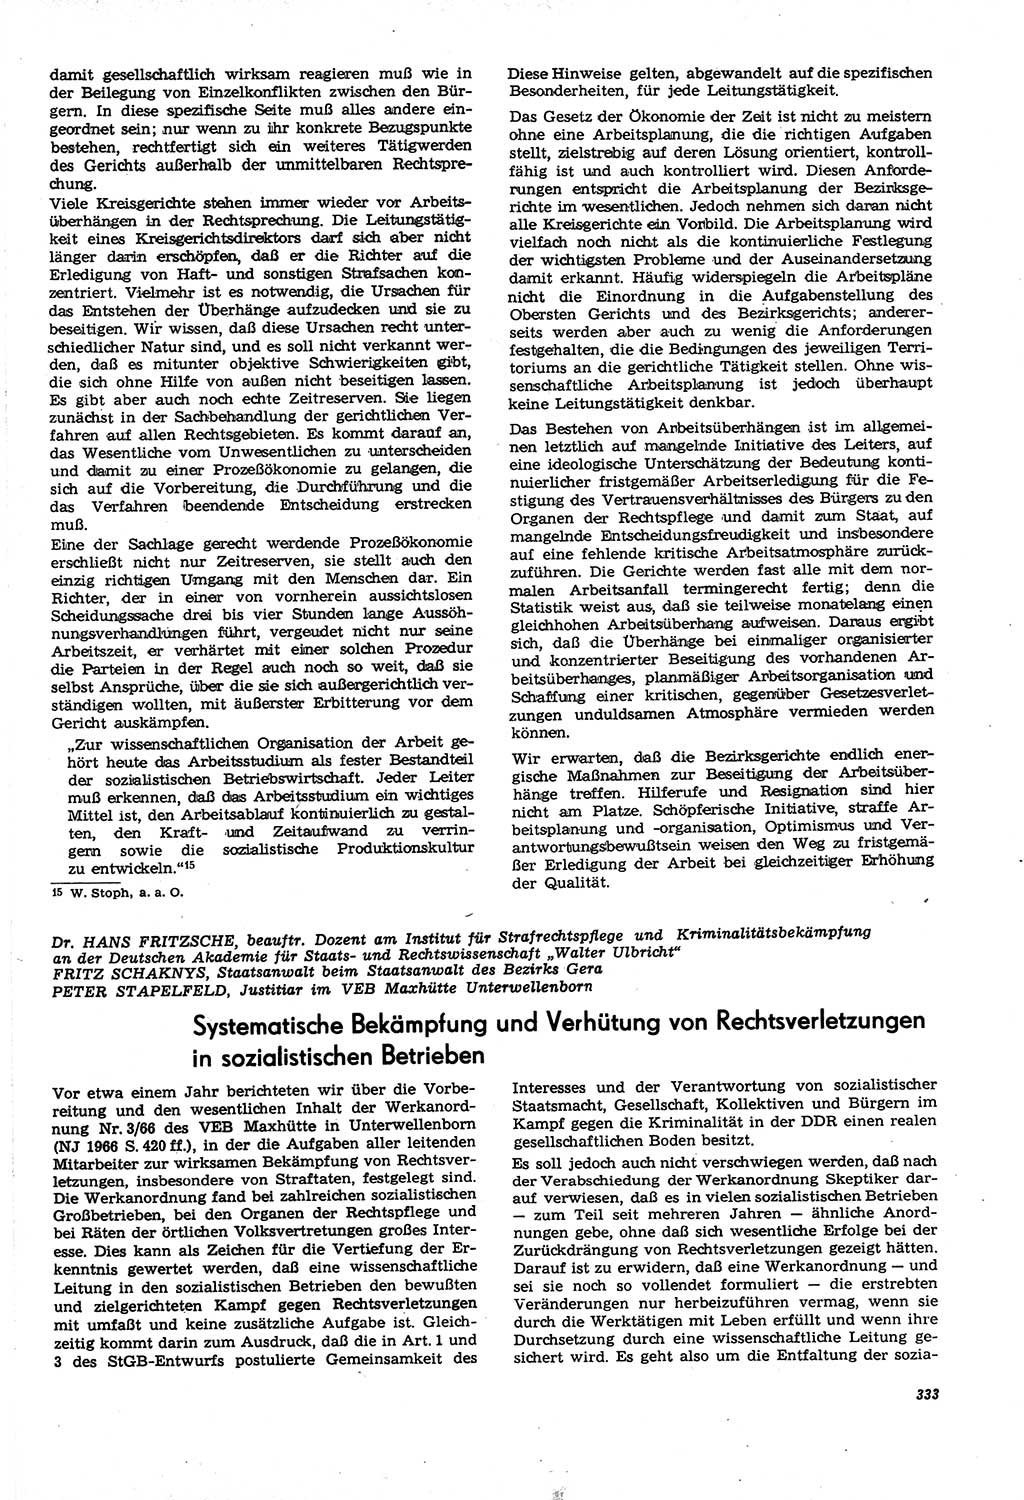 Neue Justiz (NJ), Zeitschrift für Recht und Rechtswissenschaft [Deutsche Demokratische Republik (DDR)], 21. Jahrgang 1967, Seite 333 (NJ DDR 1967, S. 333)